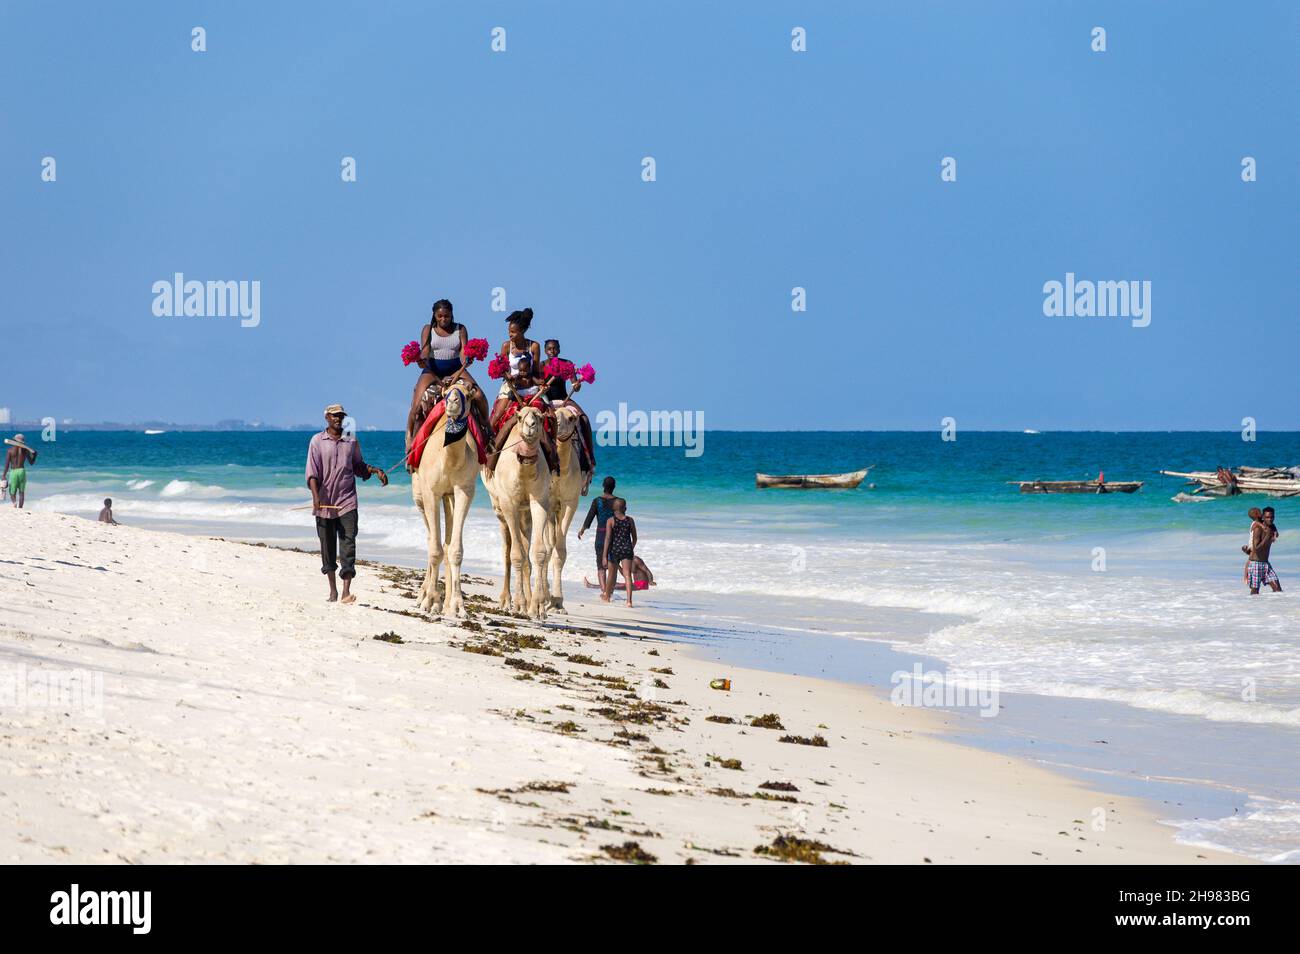 Enfants kenyans en train de faire des promenades à dos de chameau sur trois chameaux sur la plage au bord de l'océan Indien, Diani, Kenya Banque D'Images